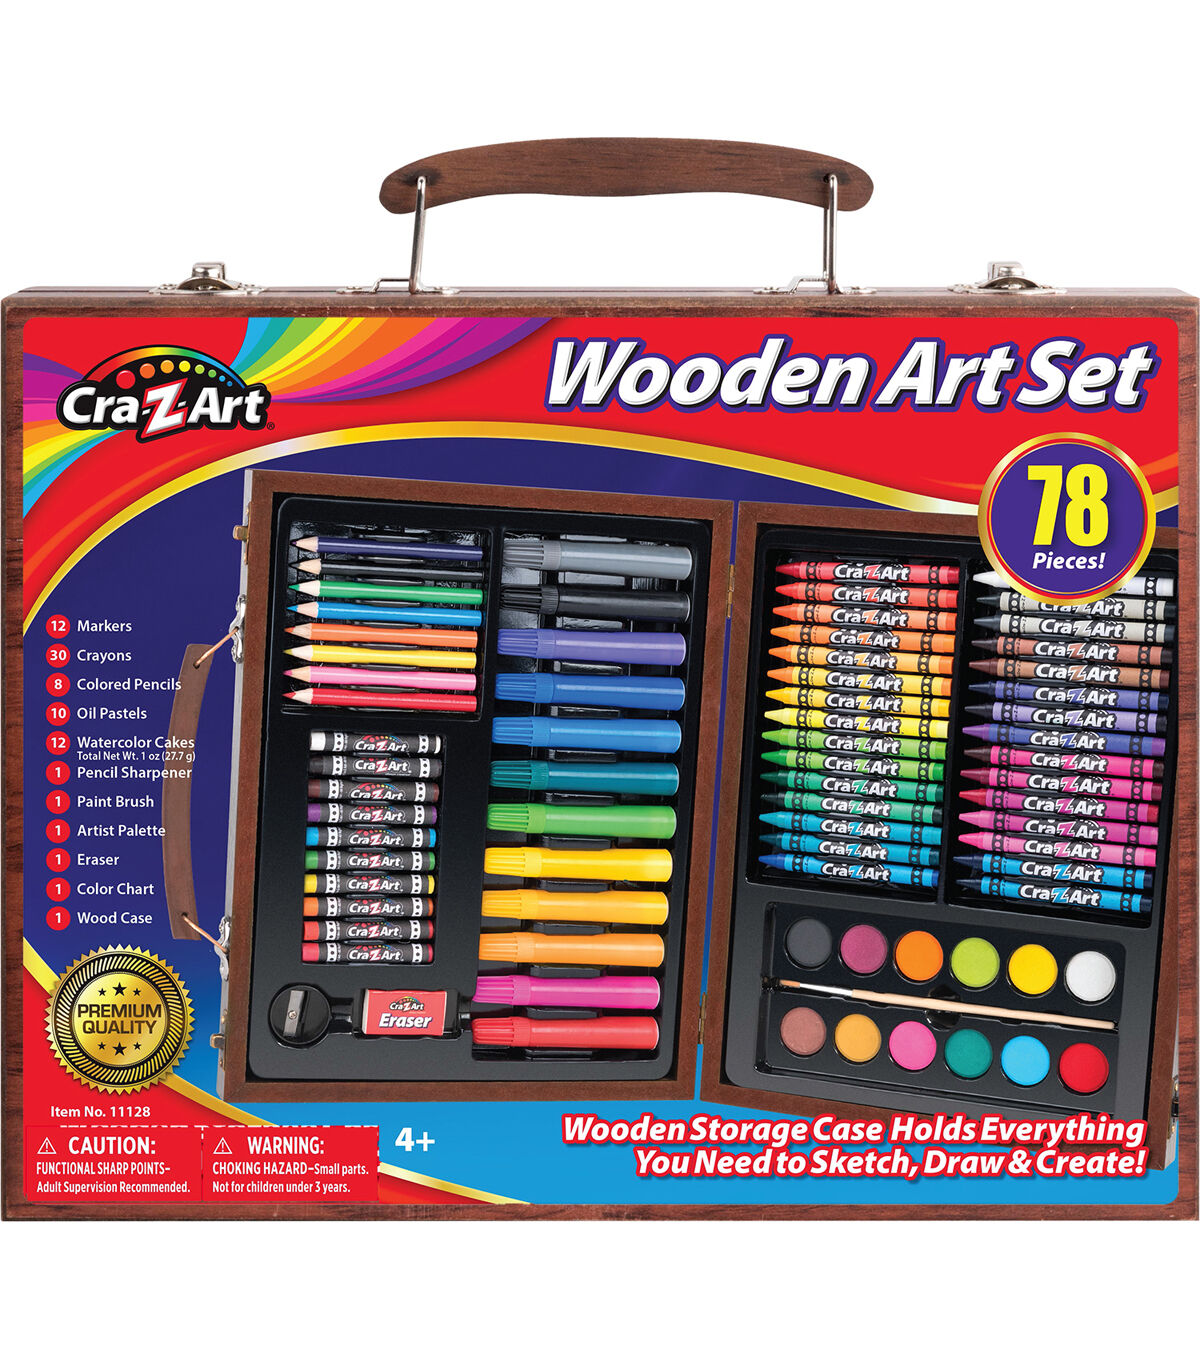 Cra Z Art Colored Pencils Color Chart